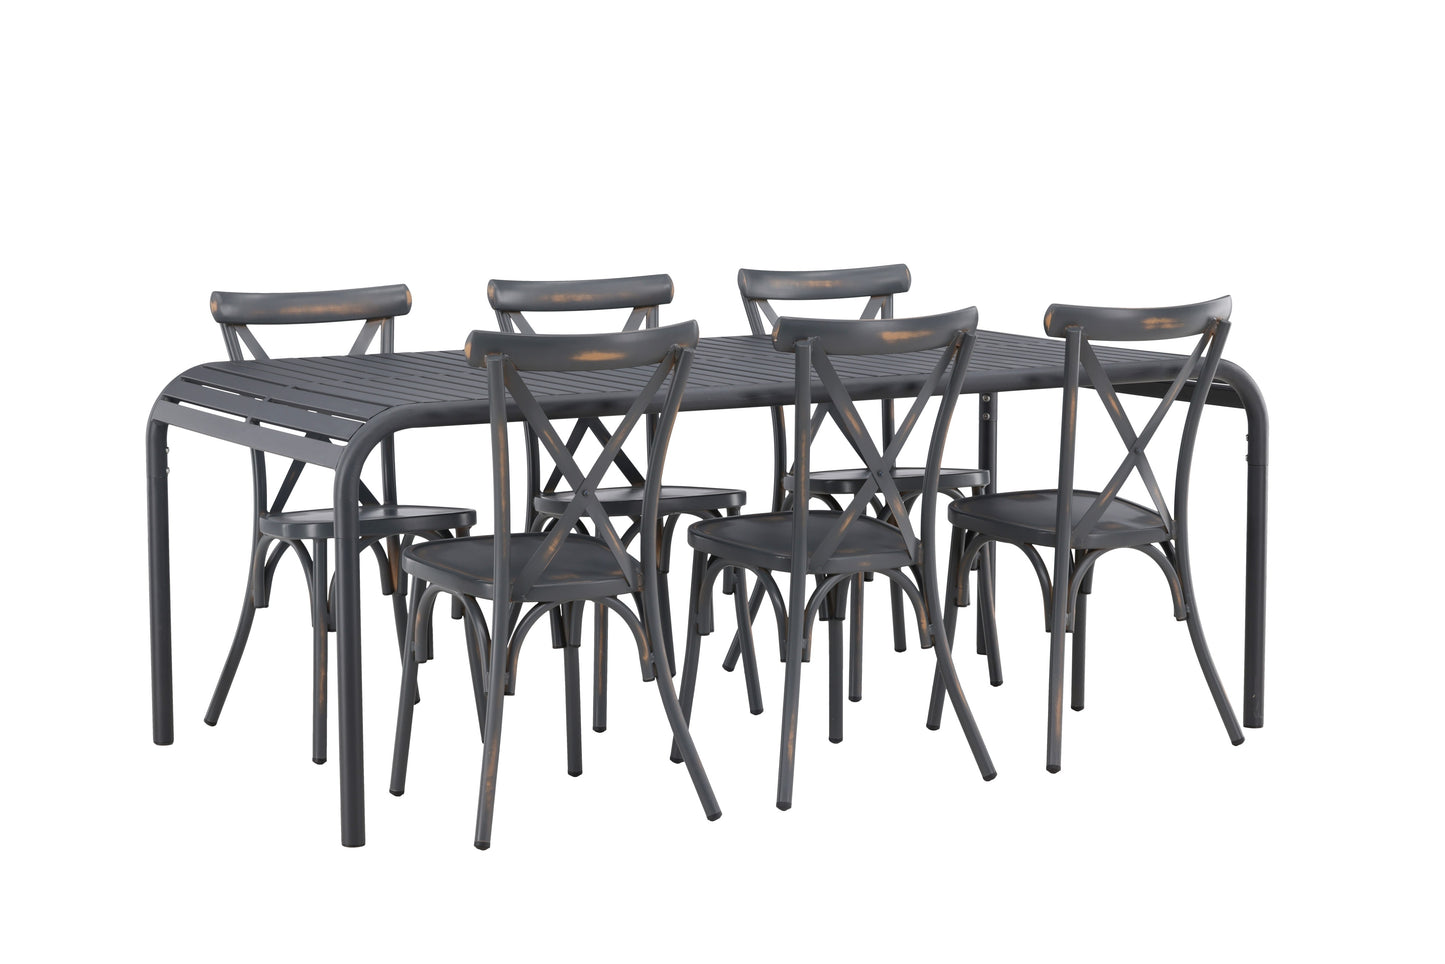 Borneo - Spisebord, Aluminium - Sort / Rektangulær 100*200* + Tablas stol Aluminium - Sort